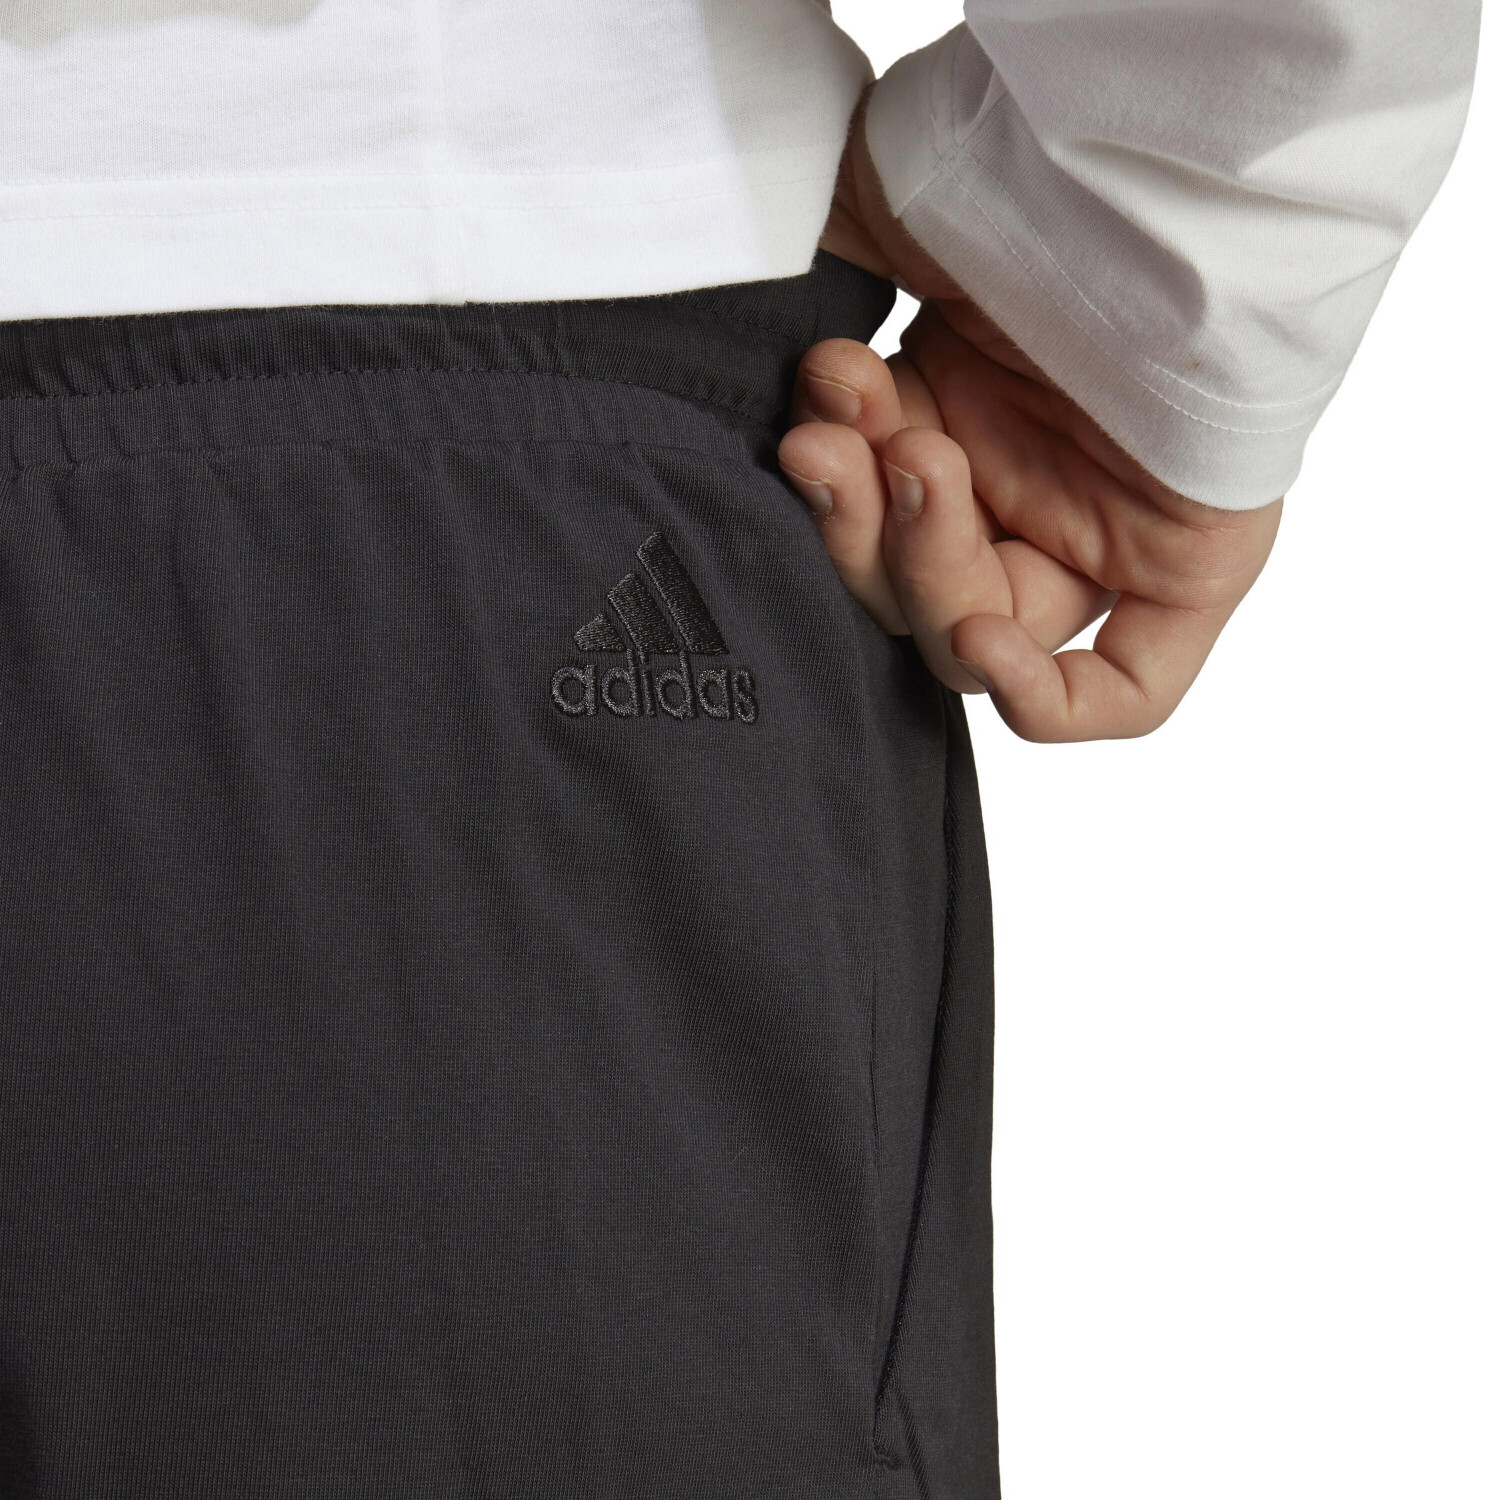 Adidas Shorts Men (IC9375) black/white ab 16,18 € | Preisvergleich bei ...